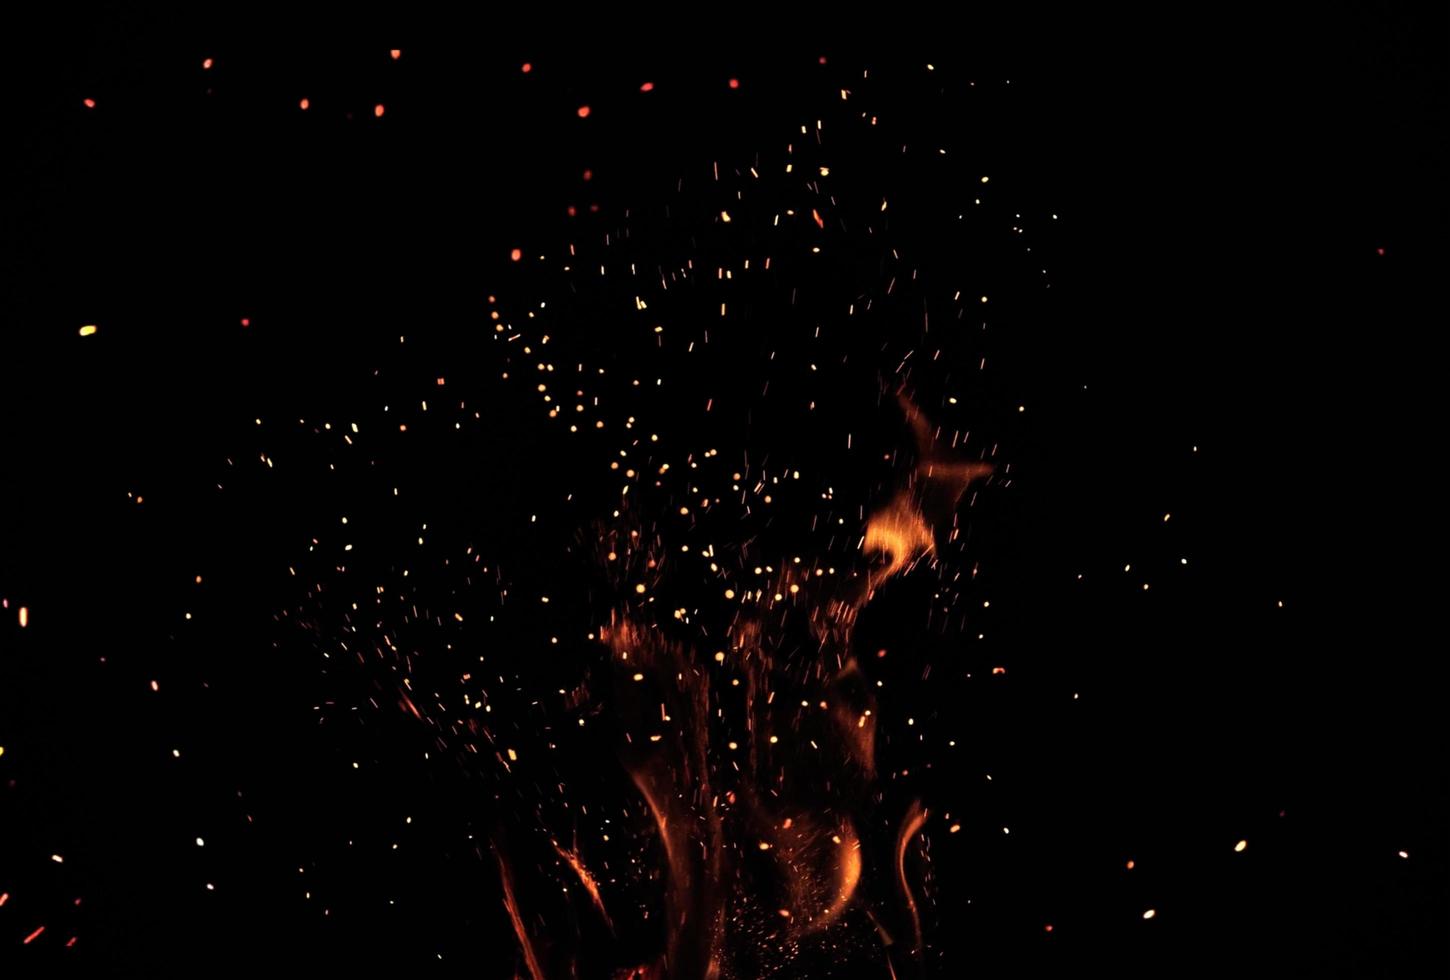 fuego quema chispas partículas superposición textura fondo negro foto de archivo